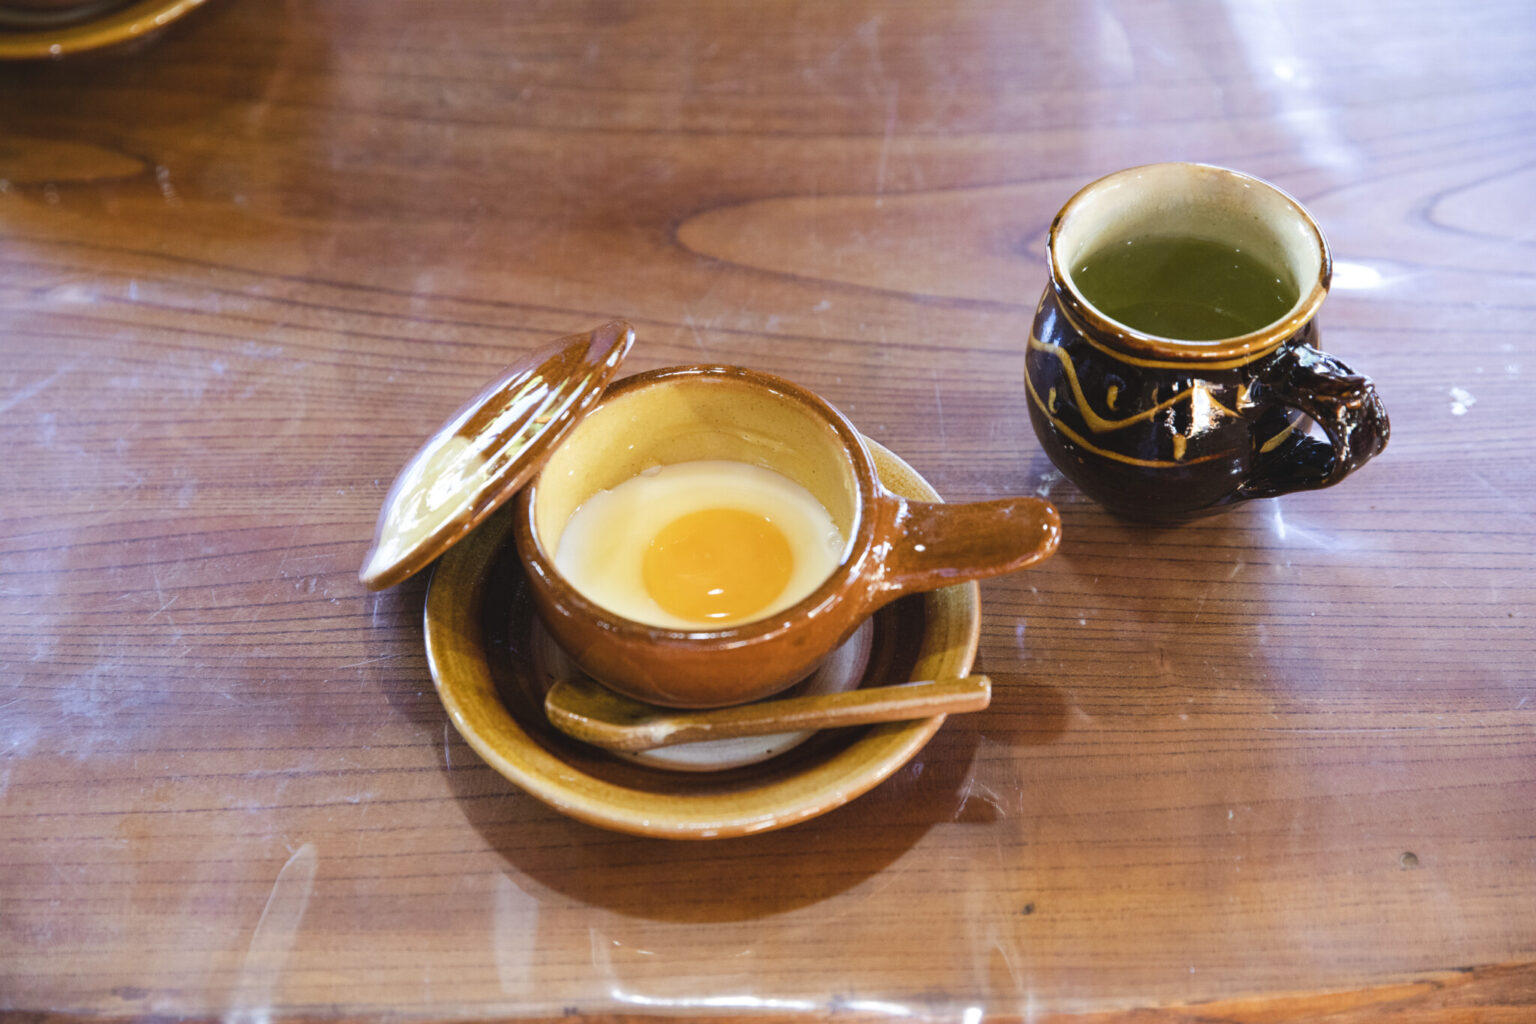 湯町窯を代表する日用食器といえば、エッグベーカー（3,900円）。イギリス人の陶芸家、バーナード・リーチの指導によってつくられた器のふっくらとしたフォルムにも温もりを感じる。